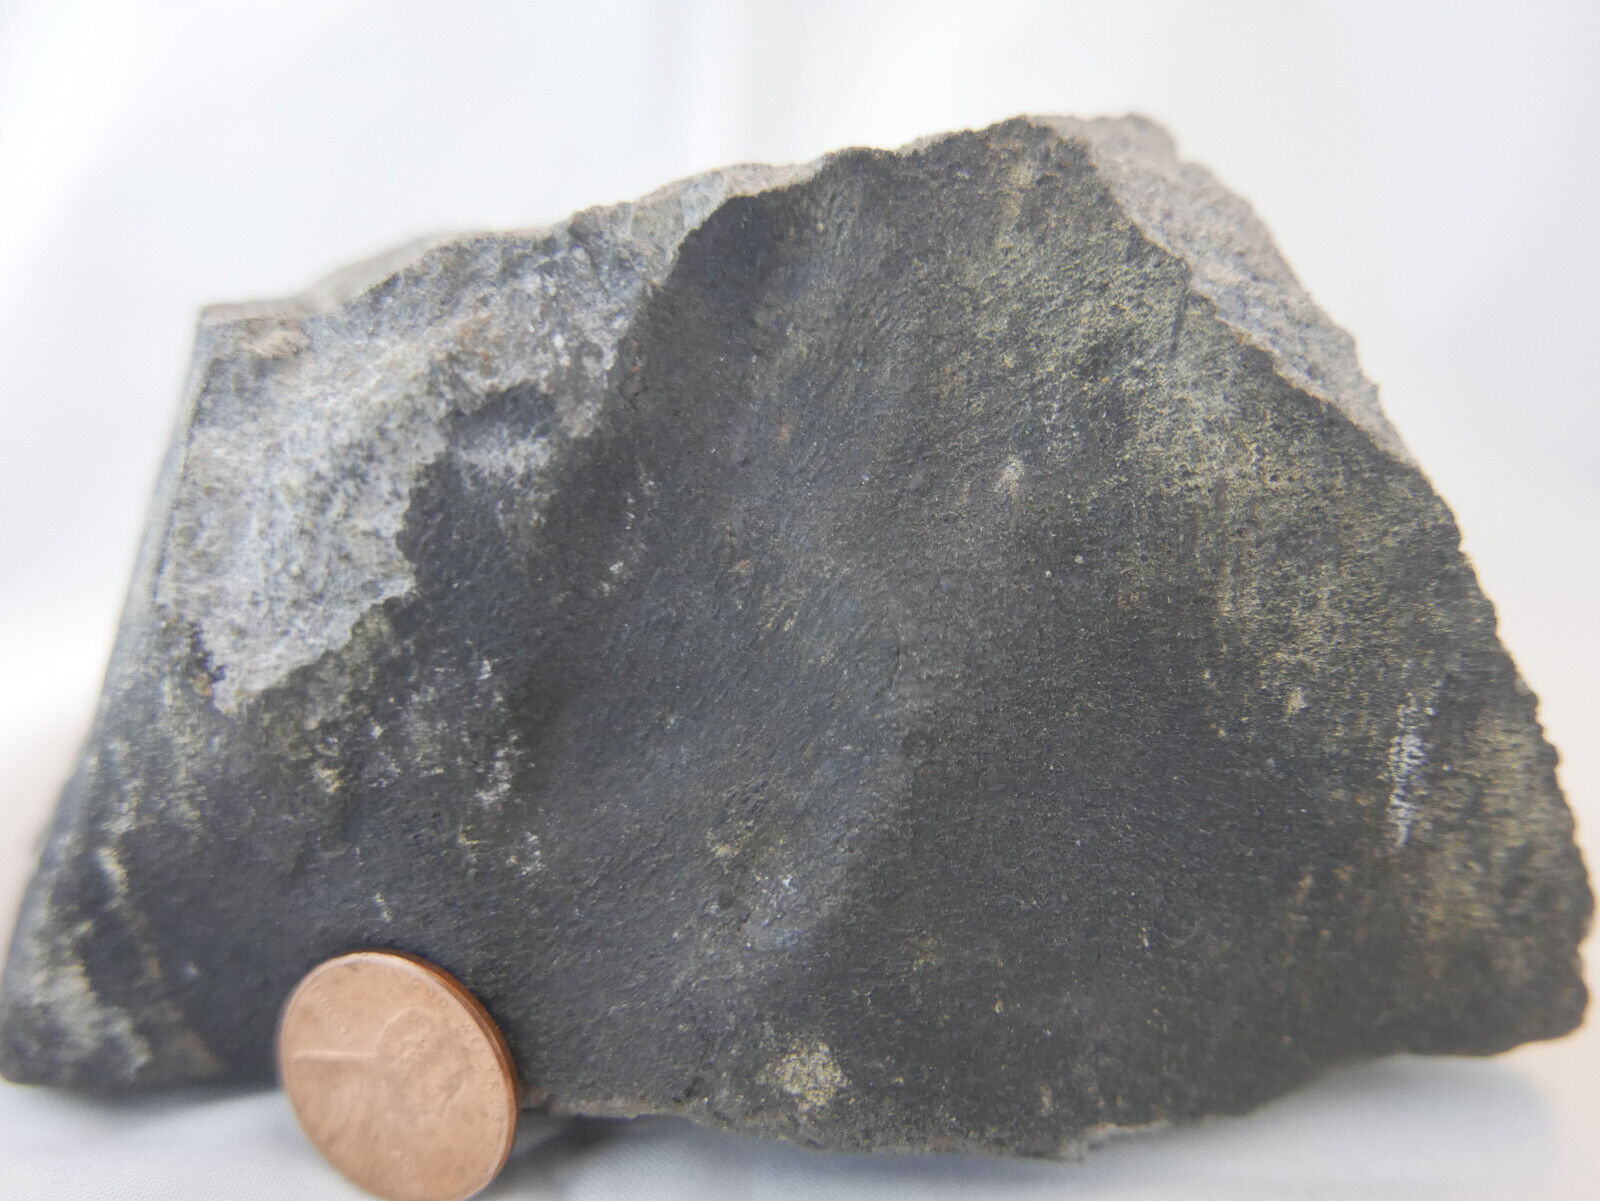 Aiquile meteorite. H5    902 grams - Bolivian Fall 2016